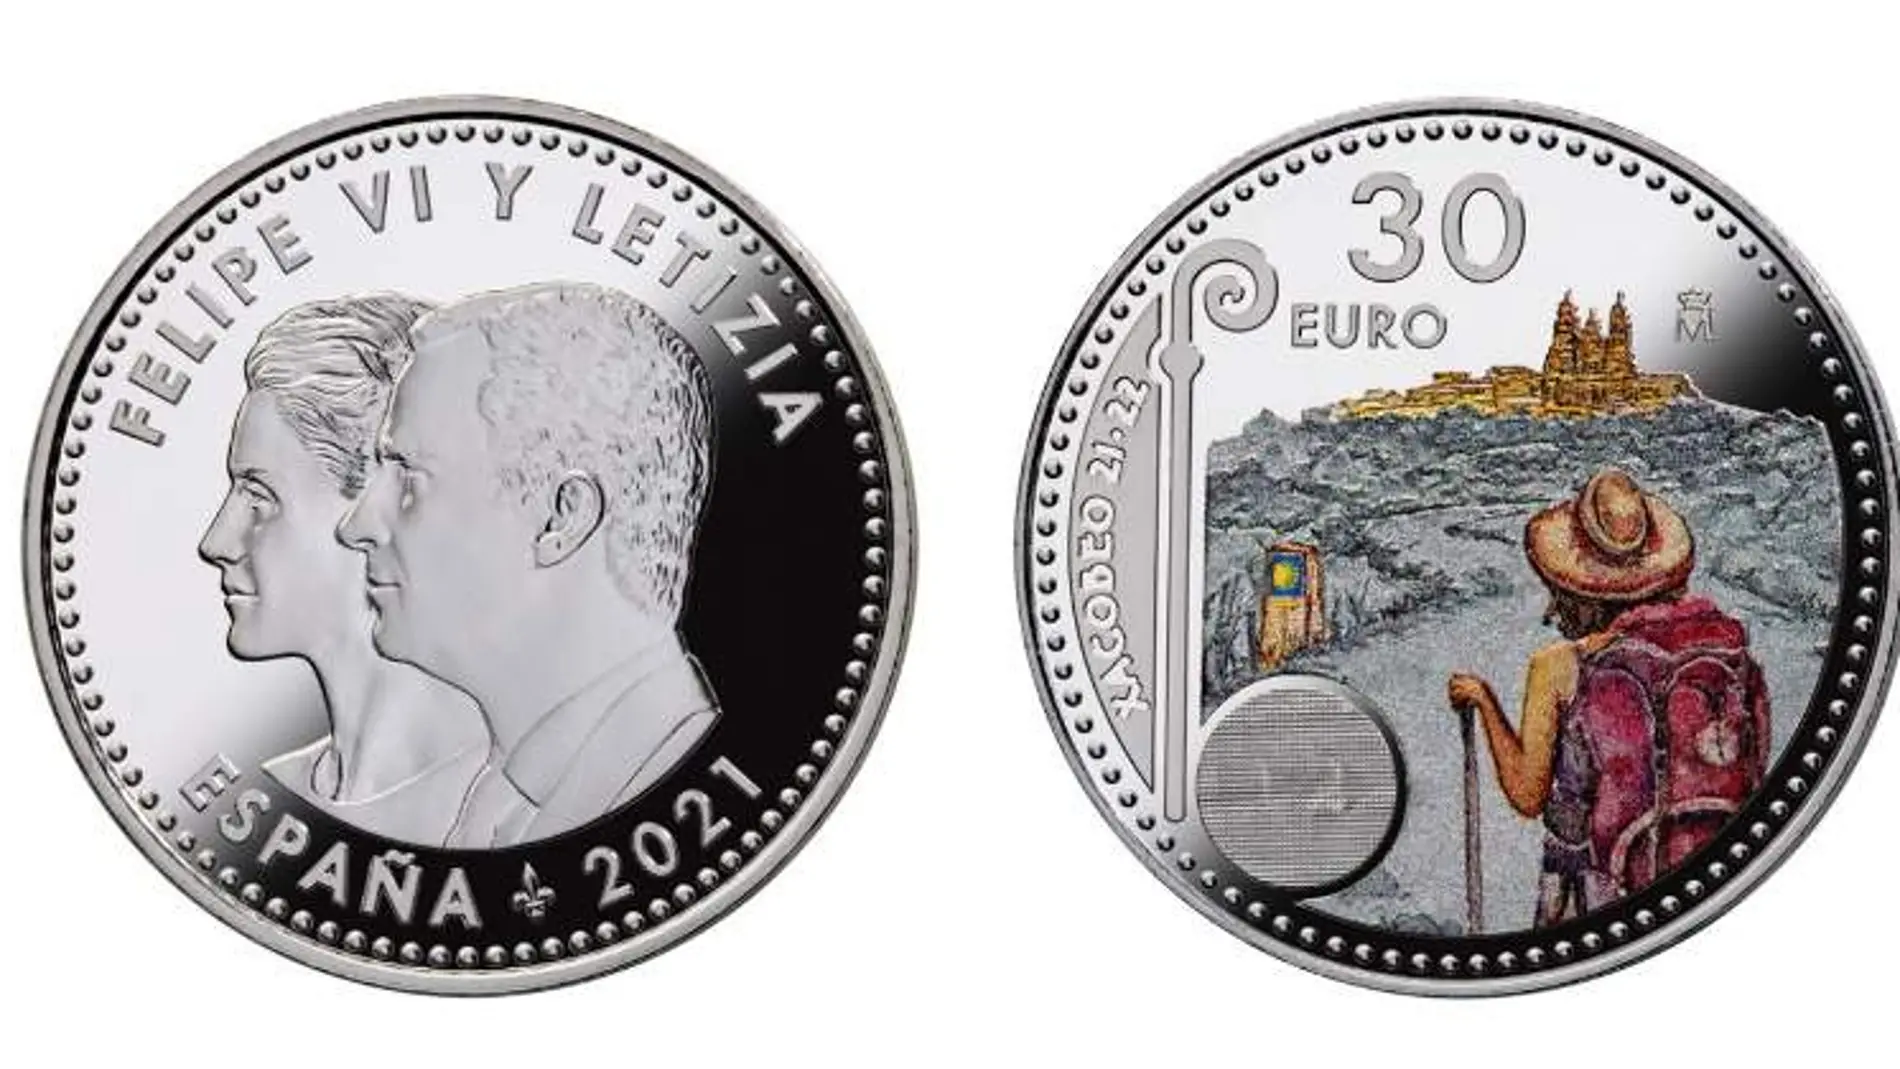 Moneda conmemorativa del Año Xacobeo 21-22